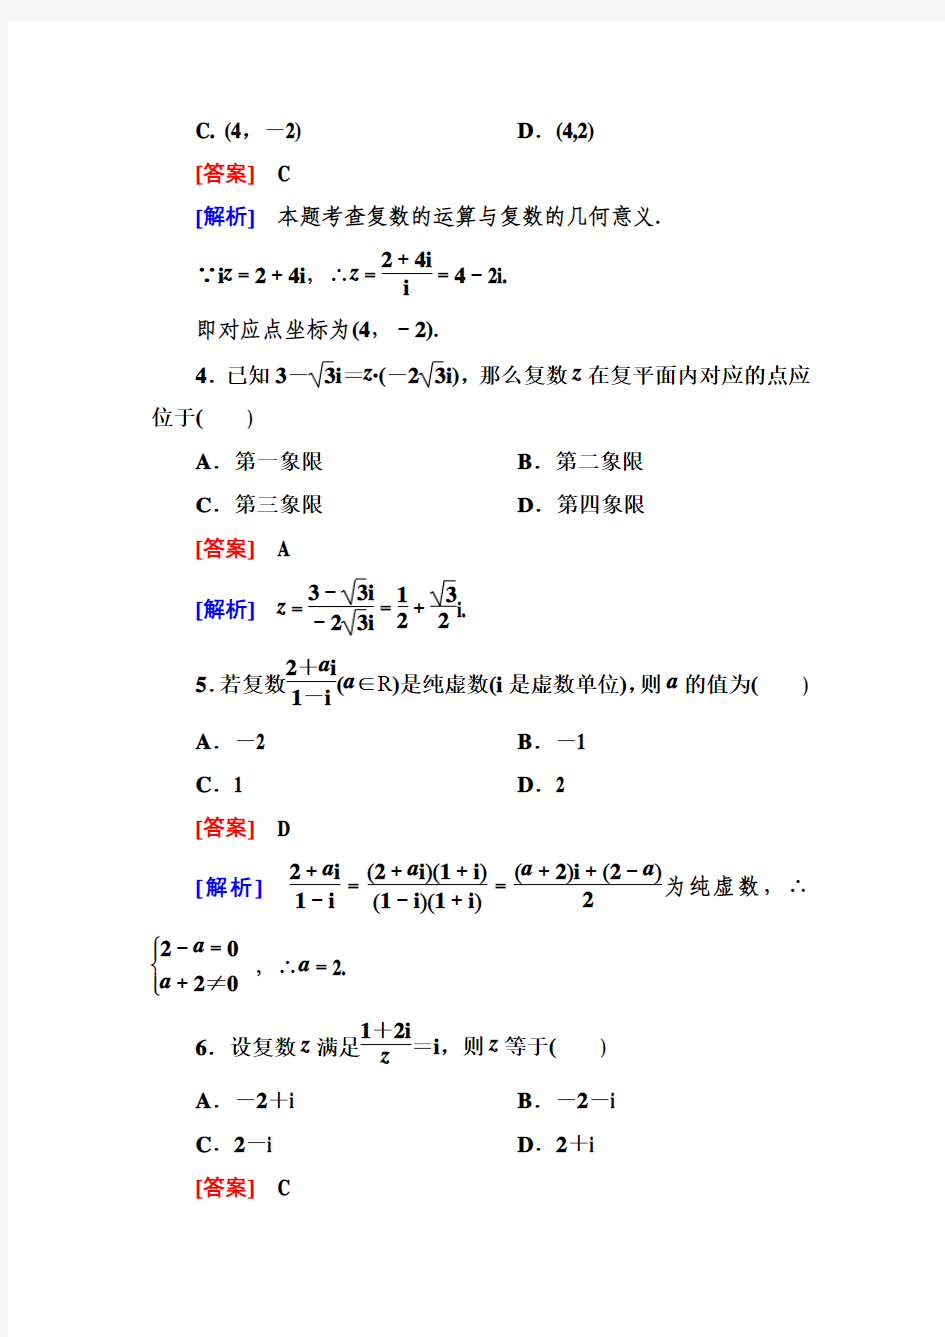 3-2-2 复数代数形式的乘除运算